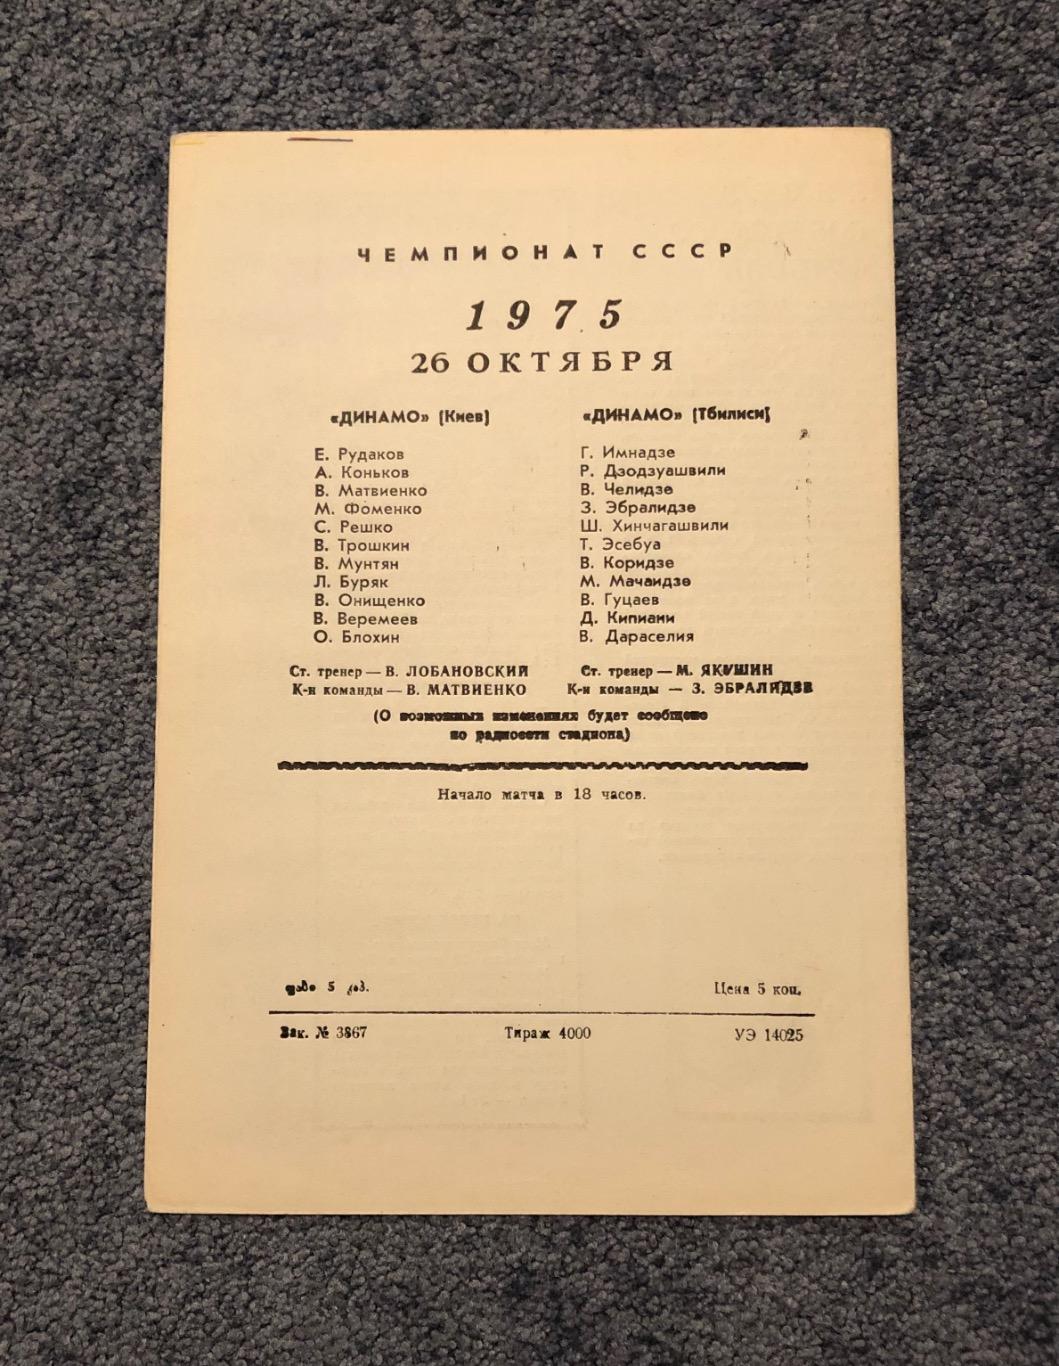 Динамо Тбилиси - Динамо Киев, 26.10.1975 с отчётом 1